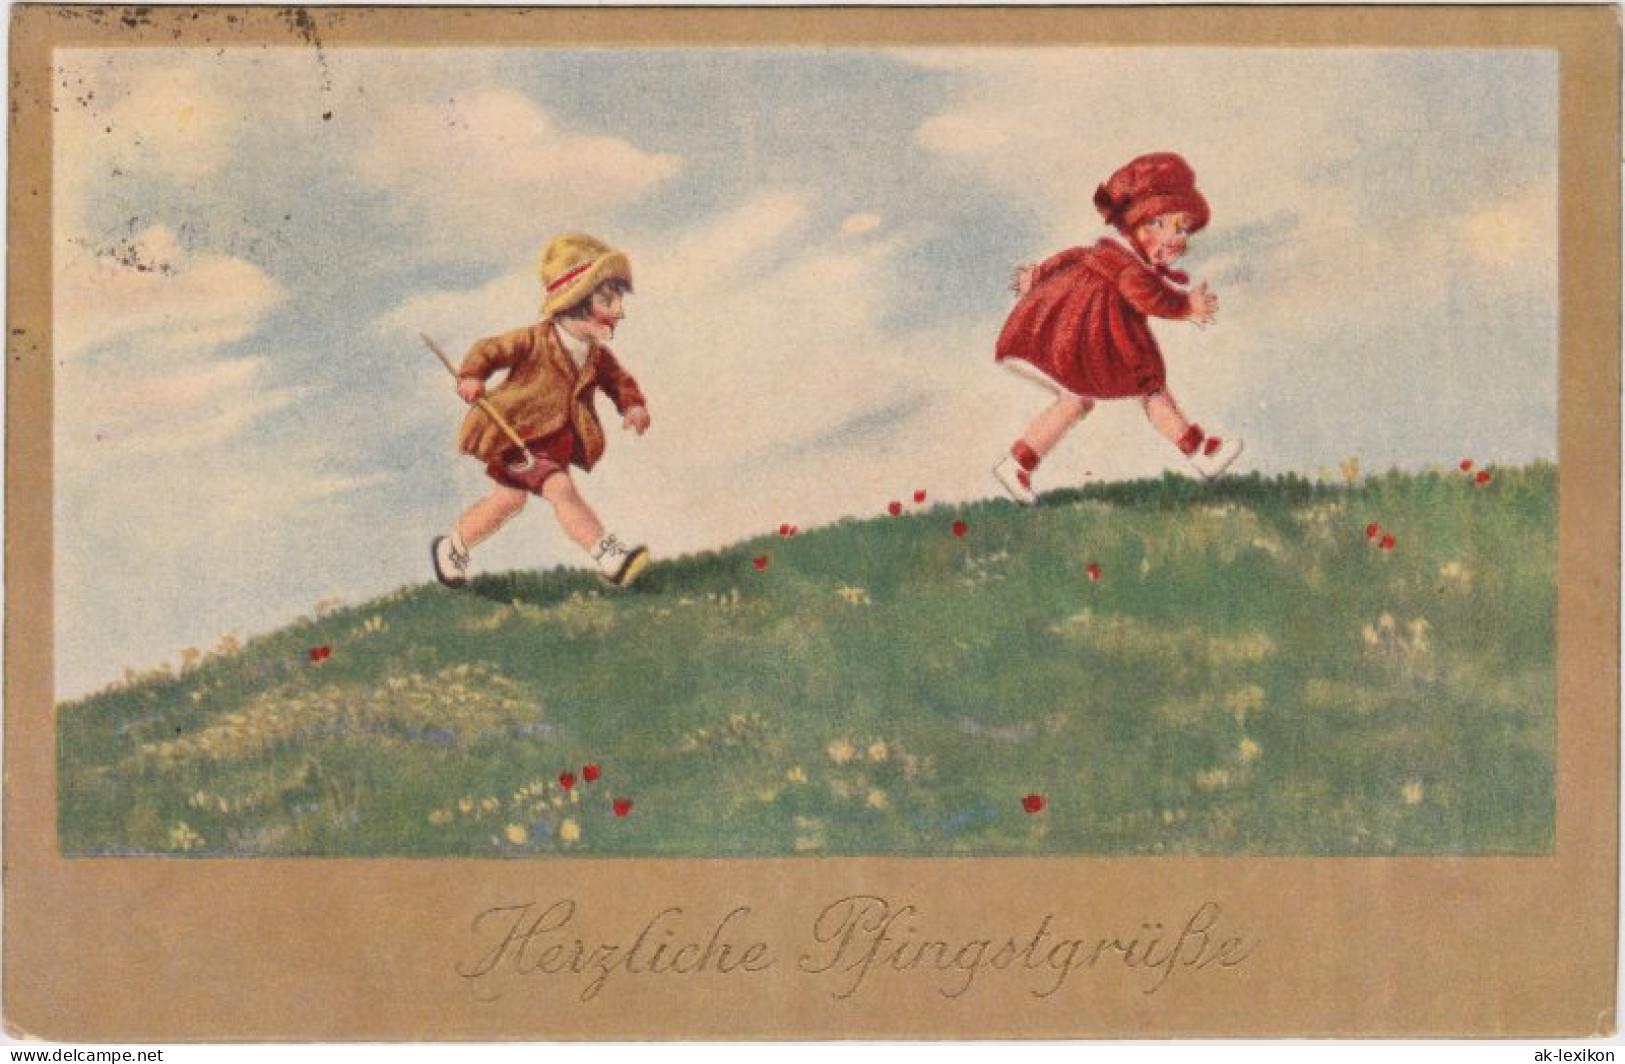 Ansichtskarte  Herzliche Pfingstgrüsse 1925  - Pfingsten